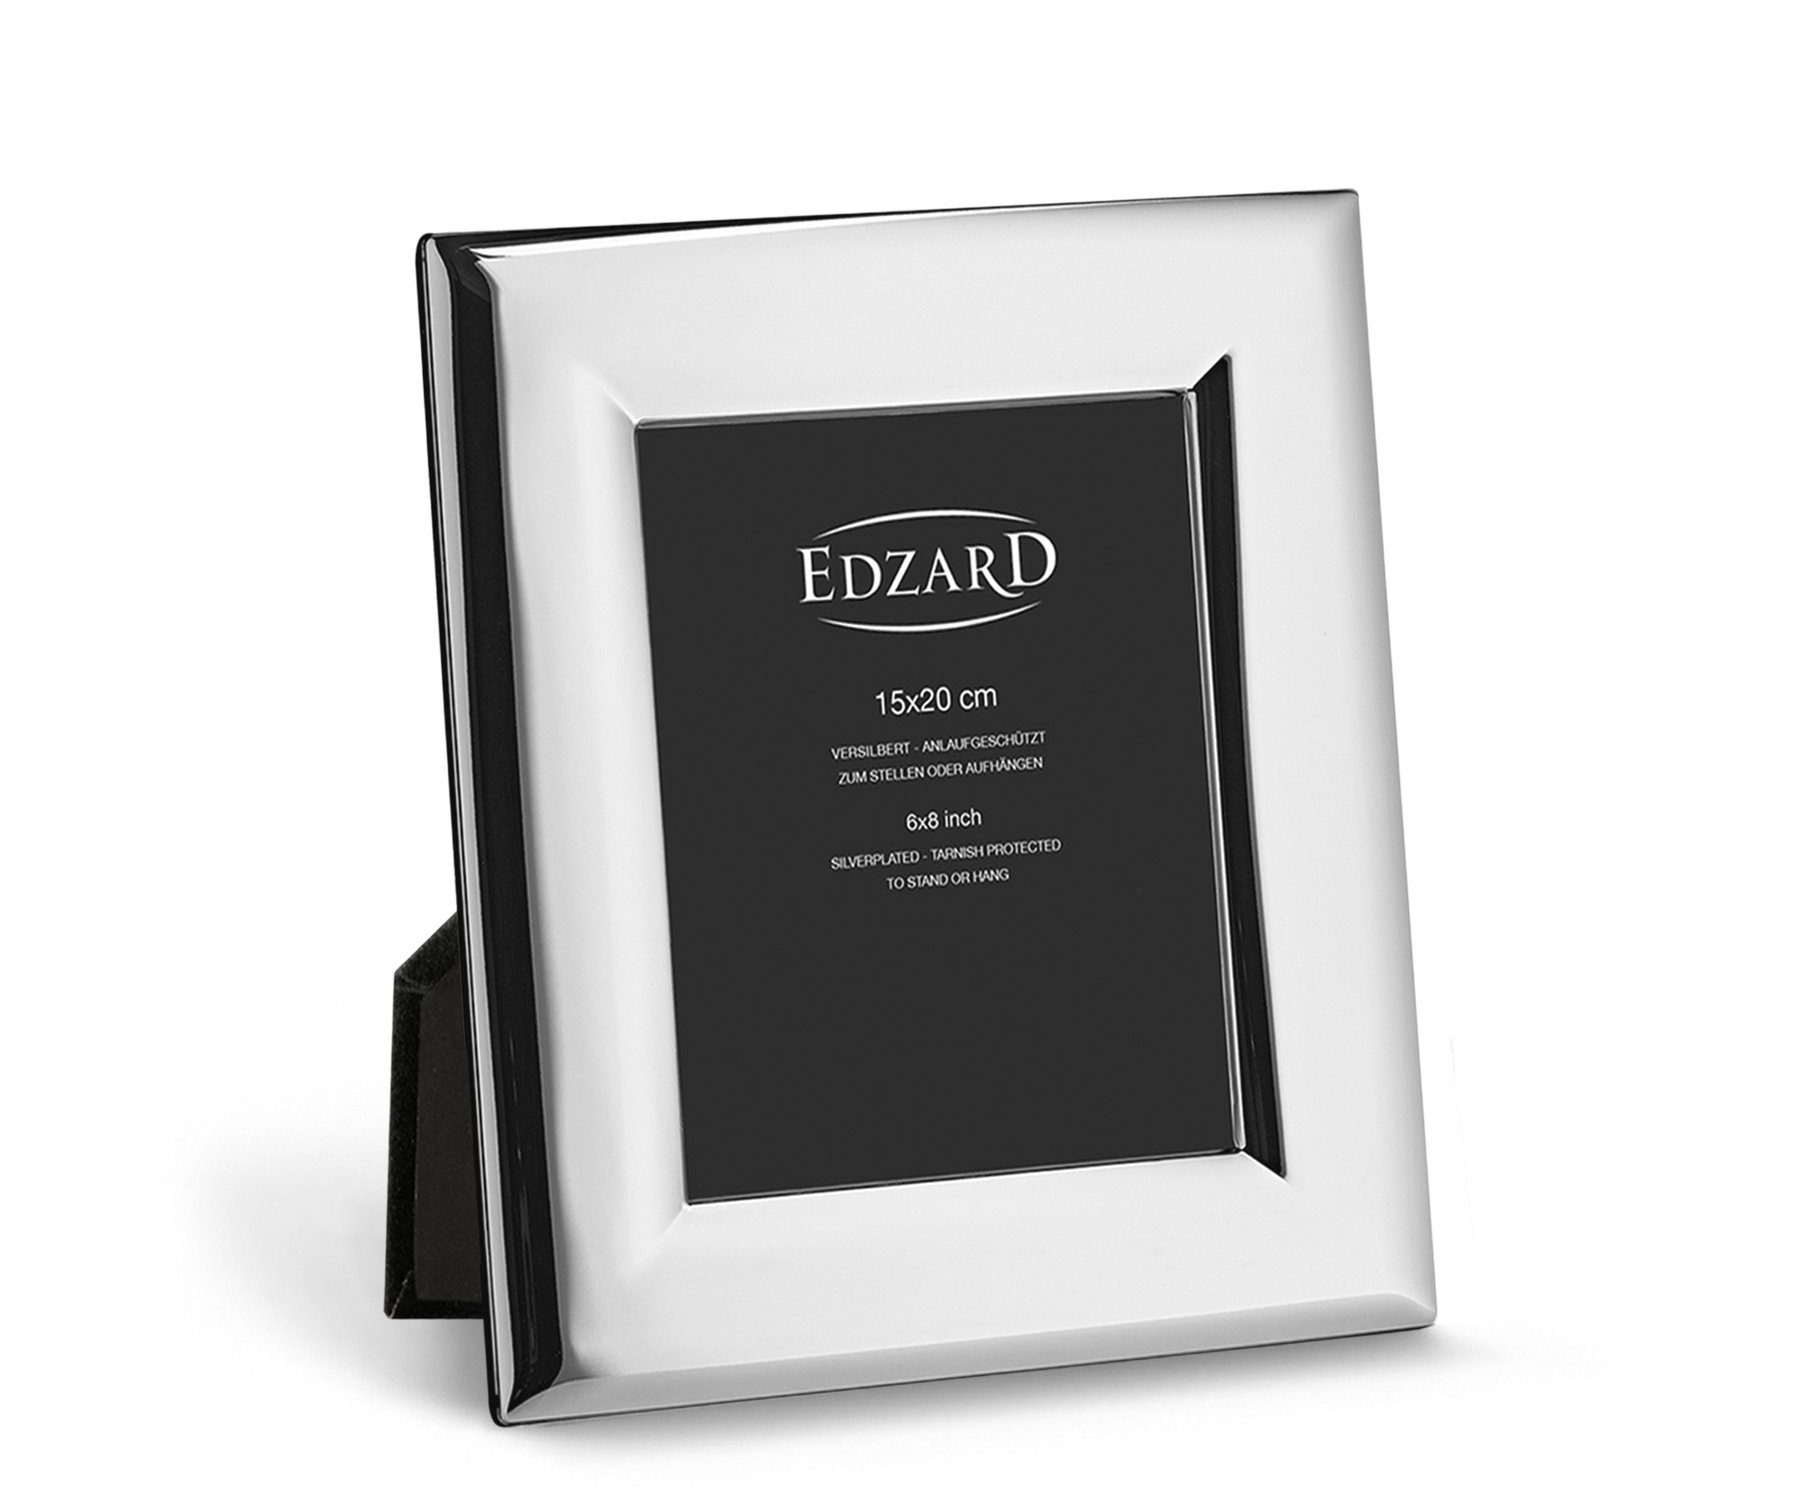 EDZARD Bilderrahmen Positano, versilbert und anlaufgeschützt, für 15x20 cm Foto